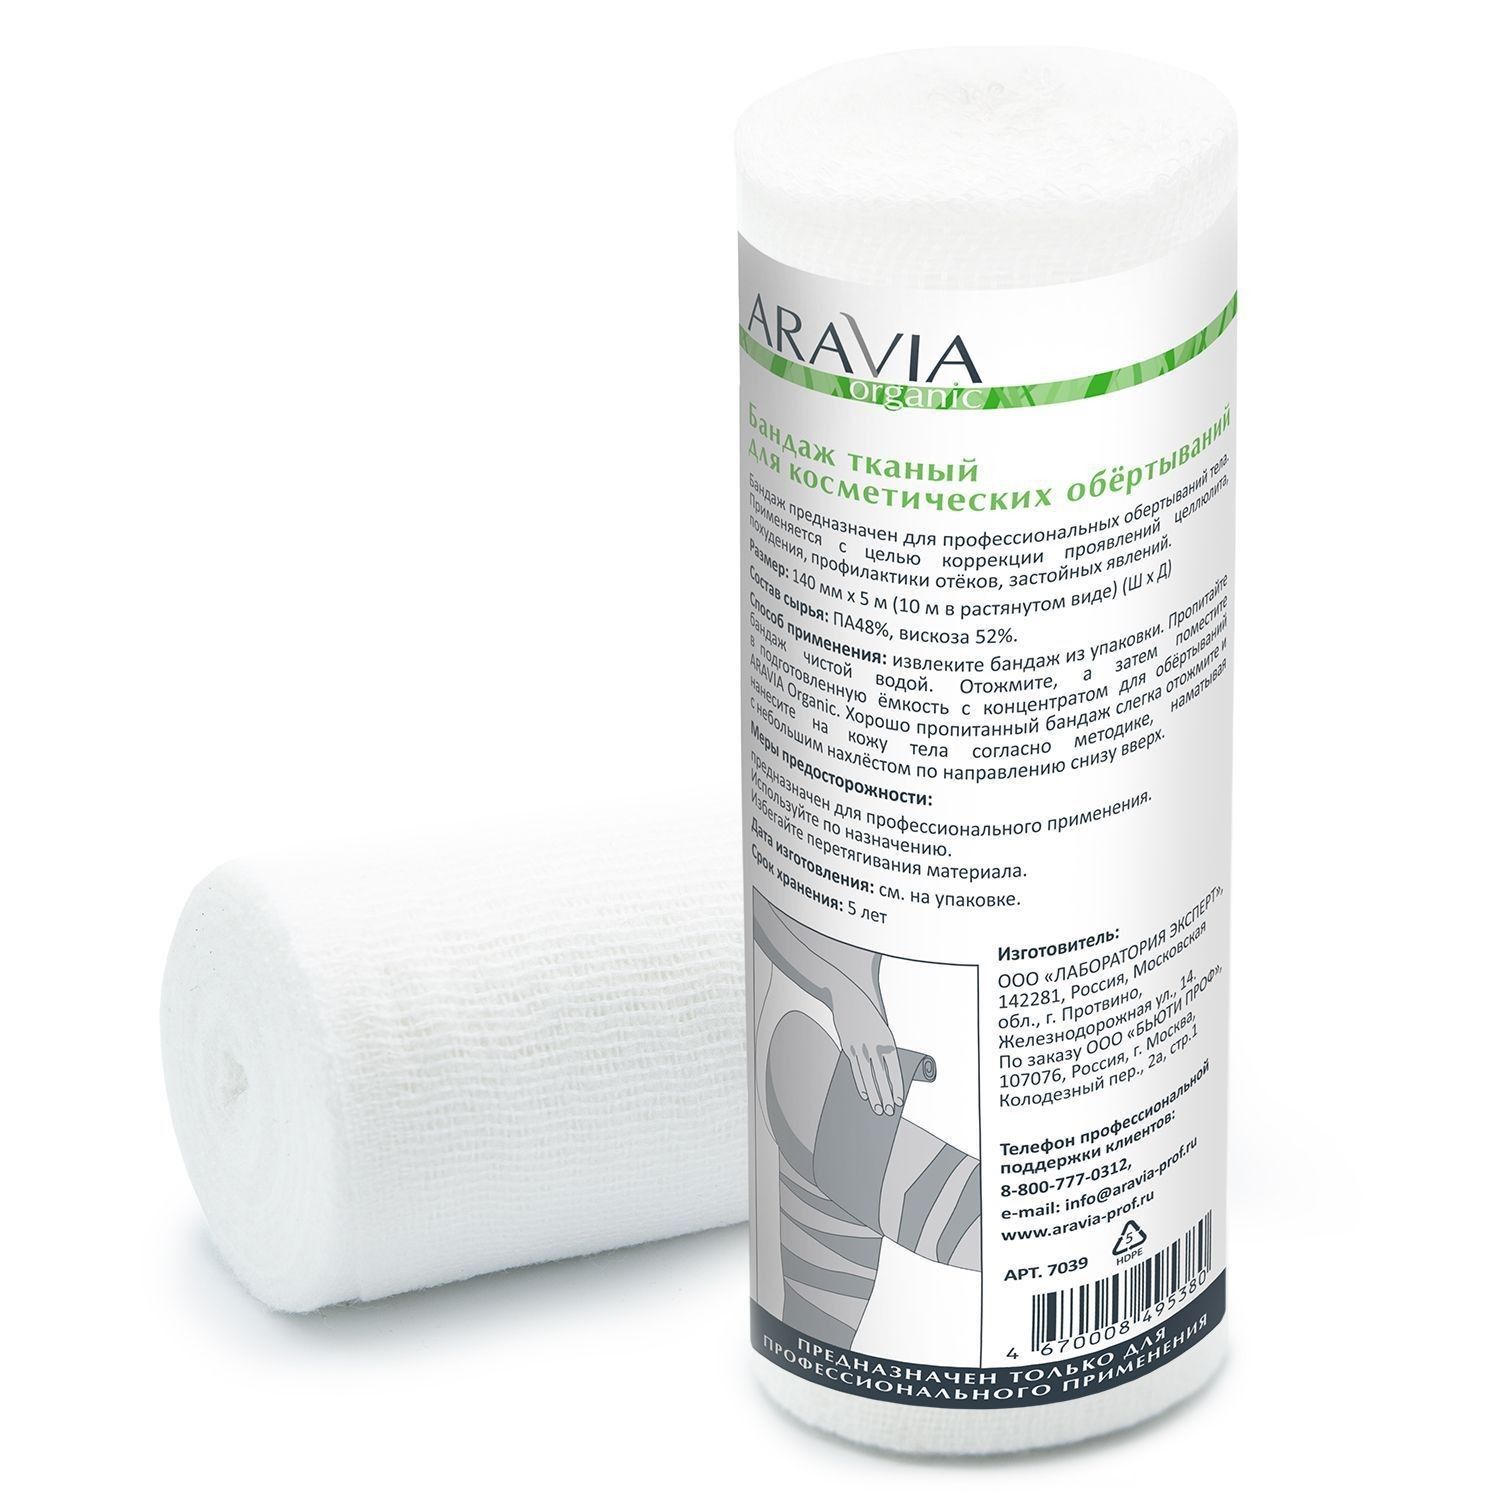 Бандаж для косметических обертываний Aravia Professional тканный 14 см x 10 м бандаж локтевой т 8205 тривес р xl